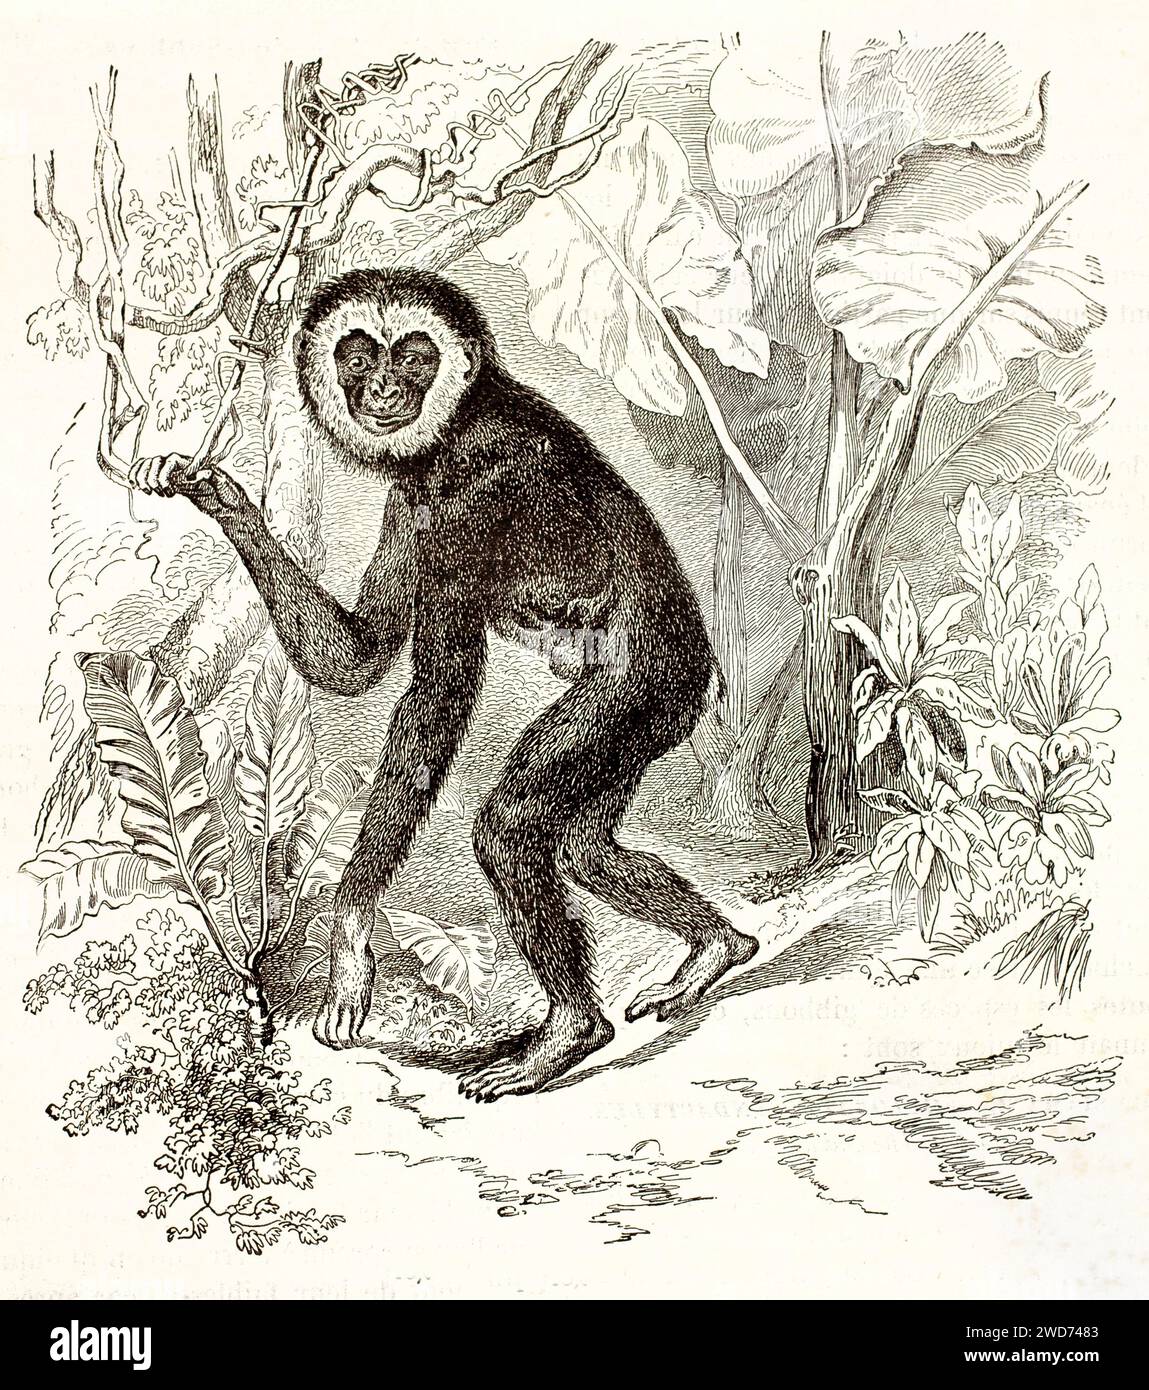 Alte Illustration eines silbernen Gibbons im Regenwald. Von unbekanntem Autor, veröffentlicht auf Brehm, Les Mammifers, Baillière et fils, Paris, 1878 Stockfoto